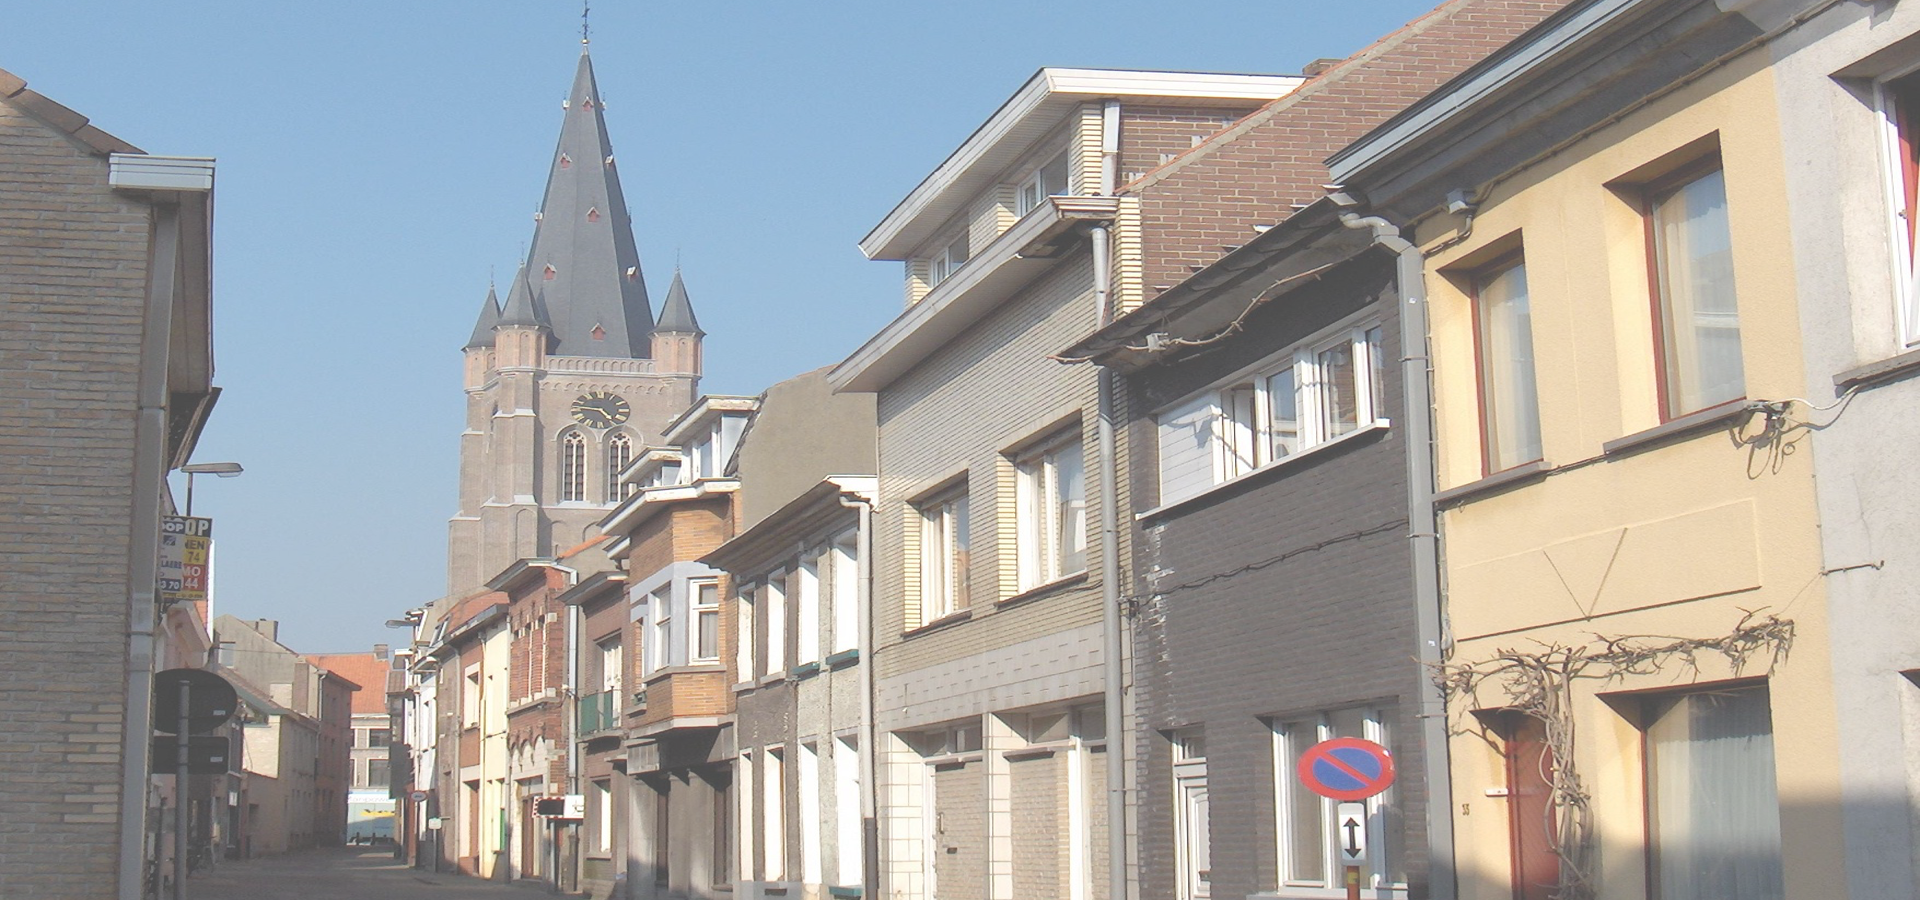 <b>Eeklo, East Flanders Province, The Flemish Region, Belgium</b>